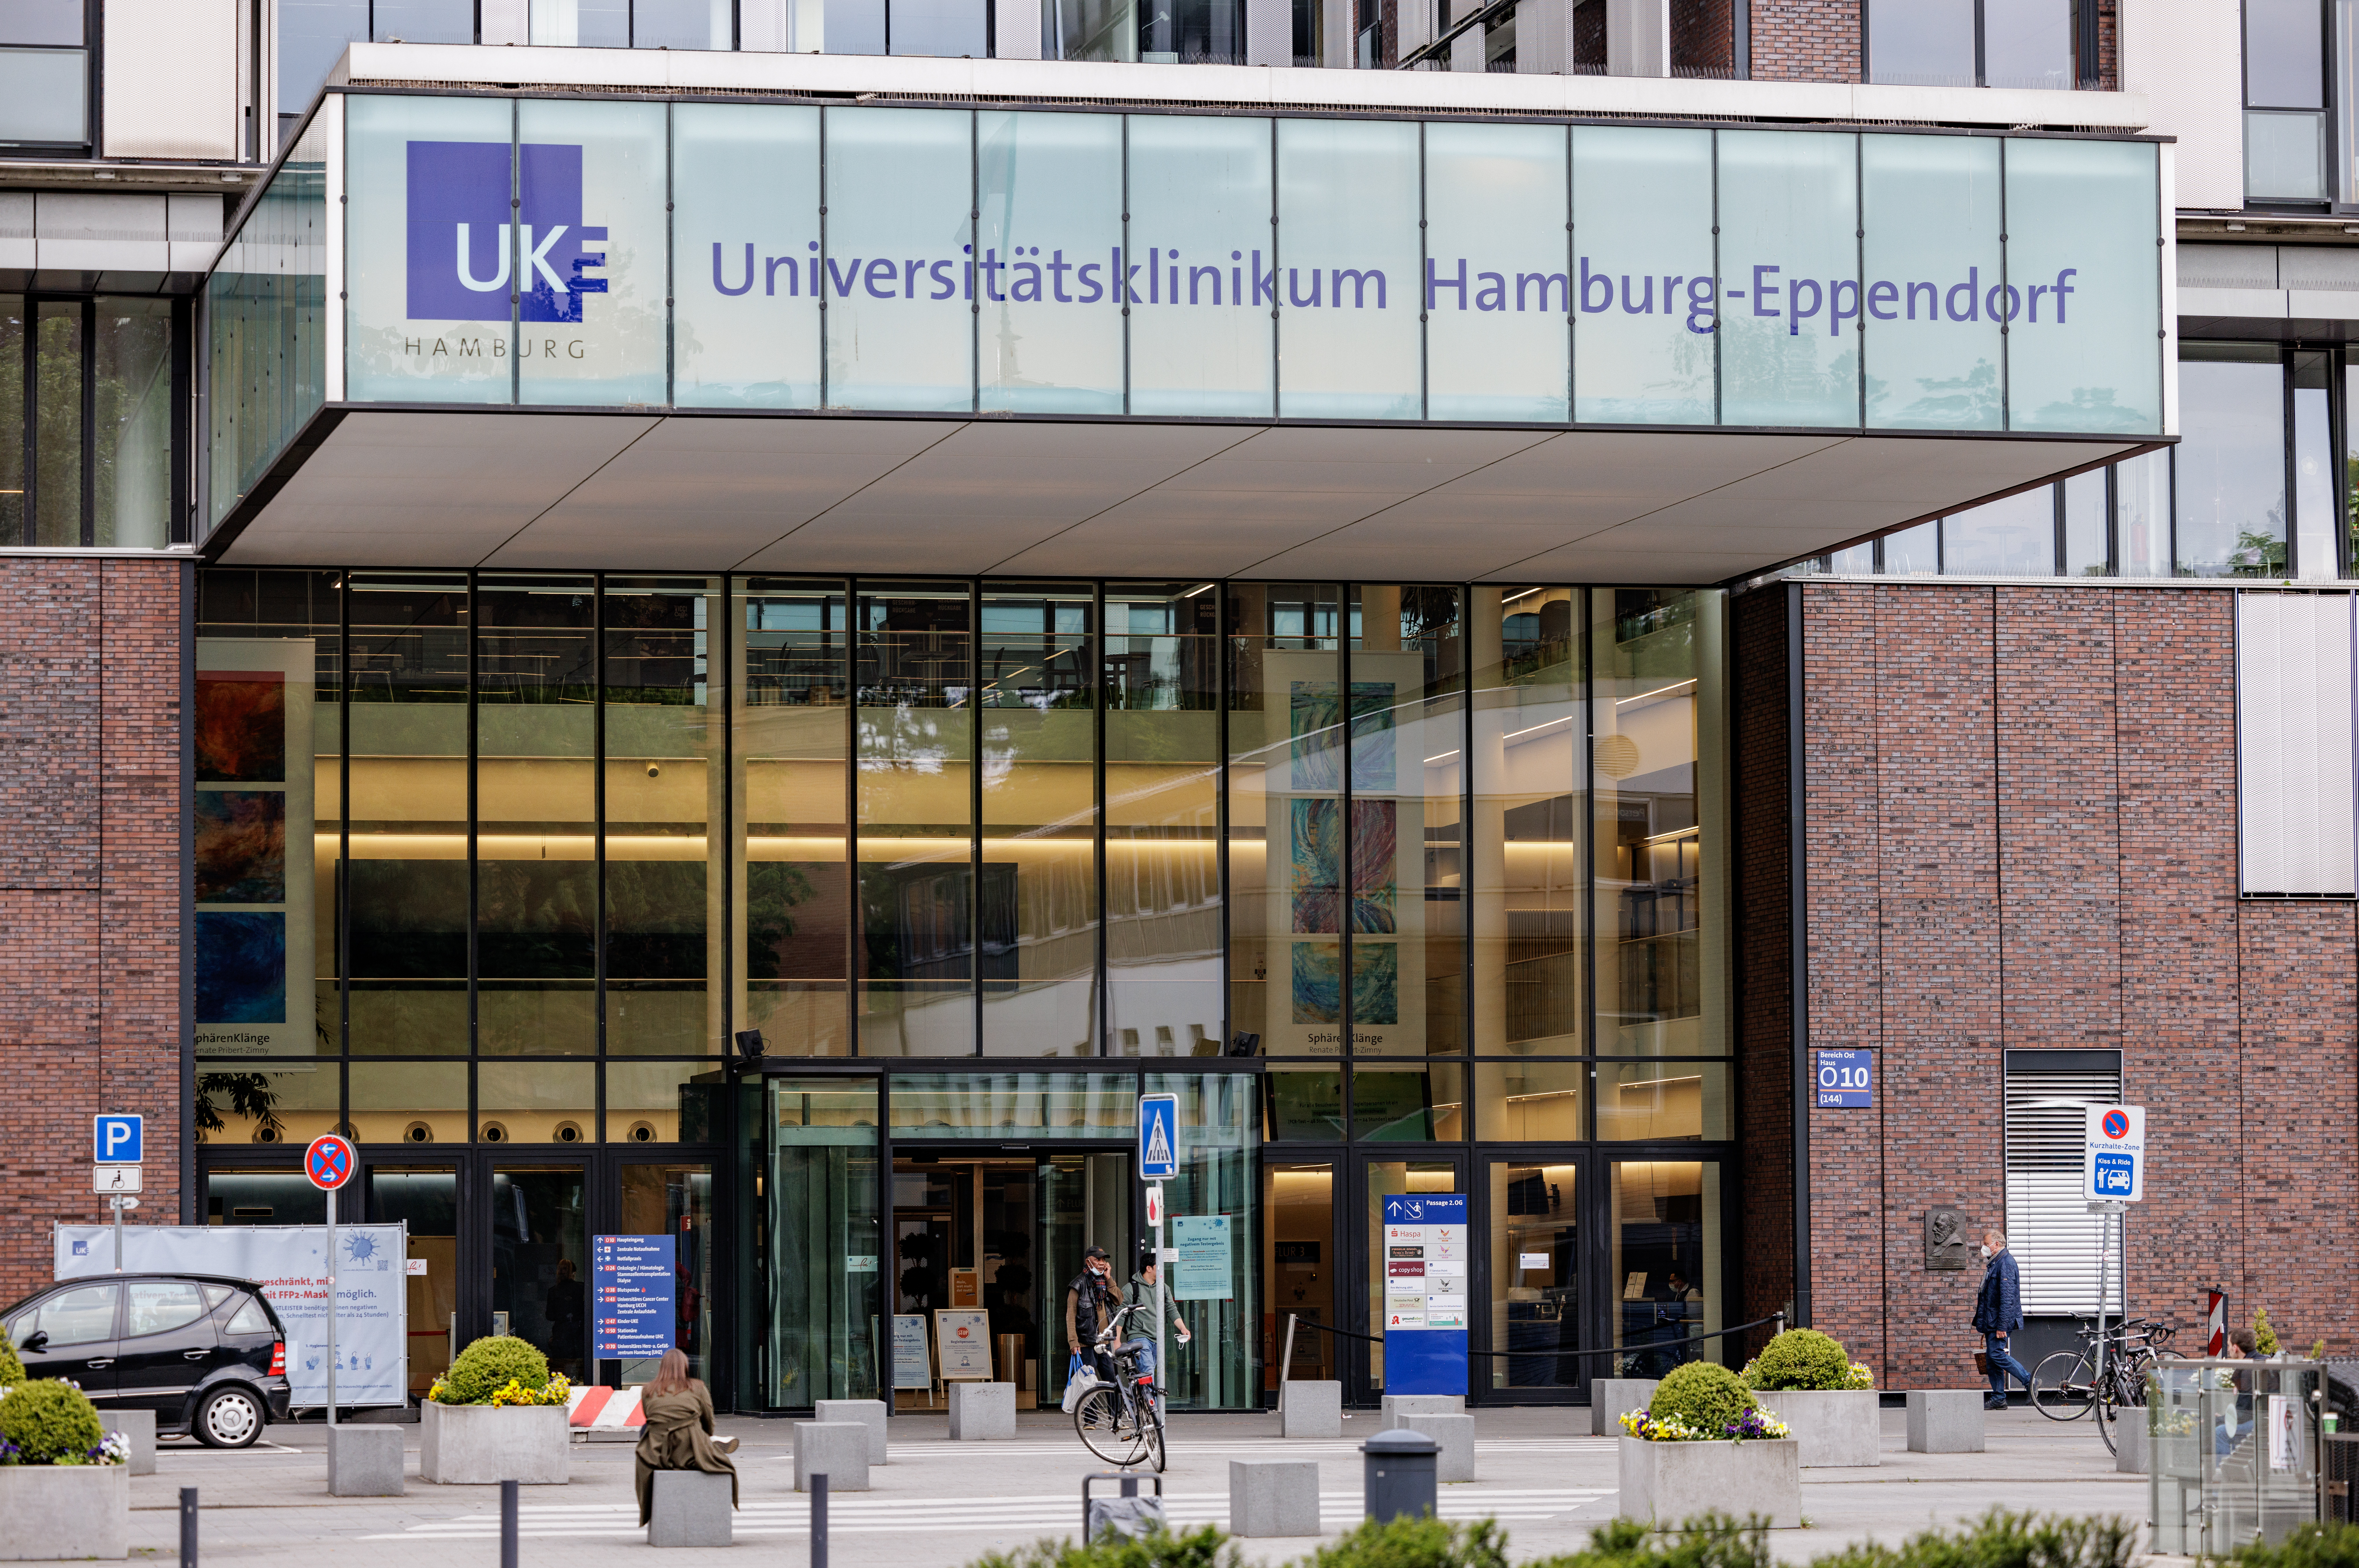 Der Haupteingang des UKE - Universitätsklinikum Hamburg-Eppendorf - wird durch Neonröhren beleuchtet. (Archivbild)